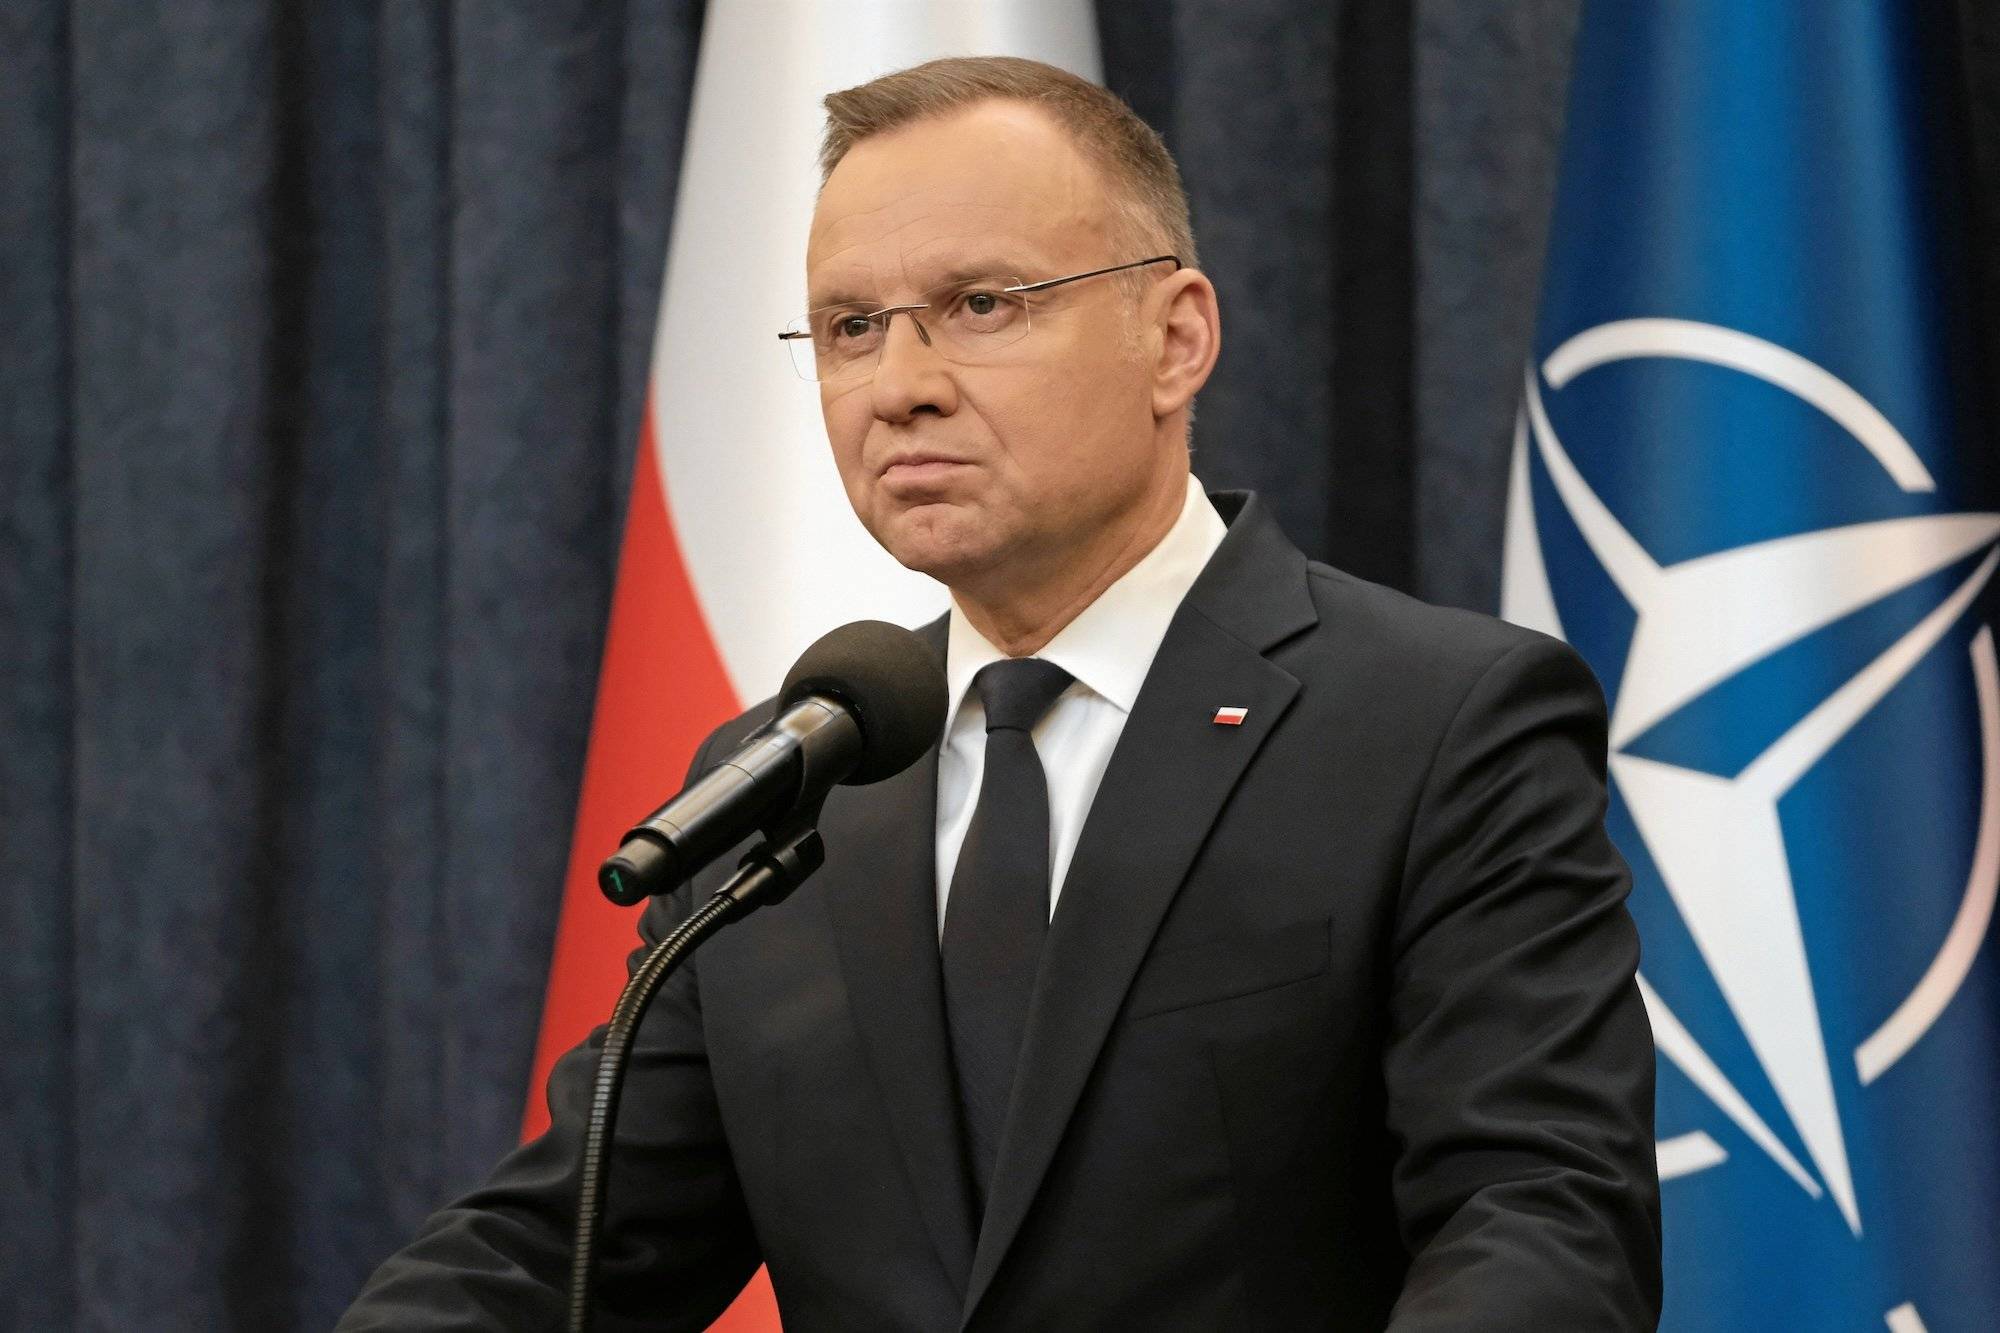 Andrzej Duda w okularach stoi przy mikrofonie na tle flag Polski i NATO